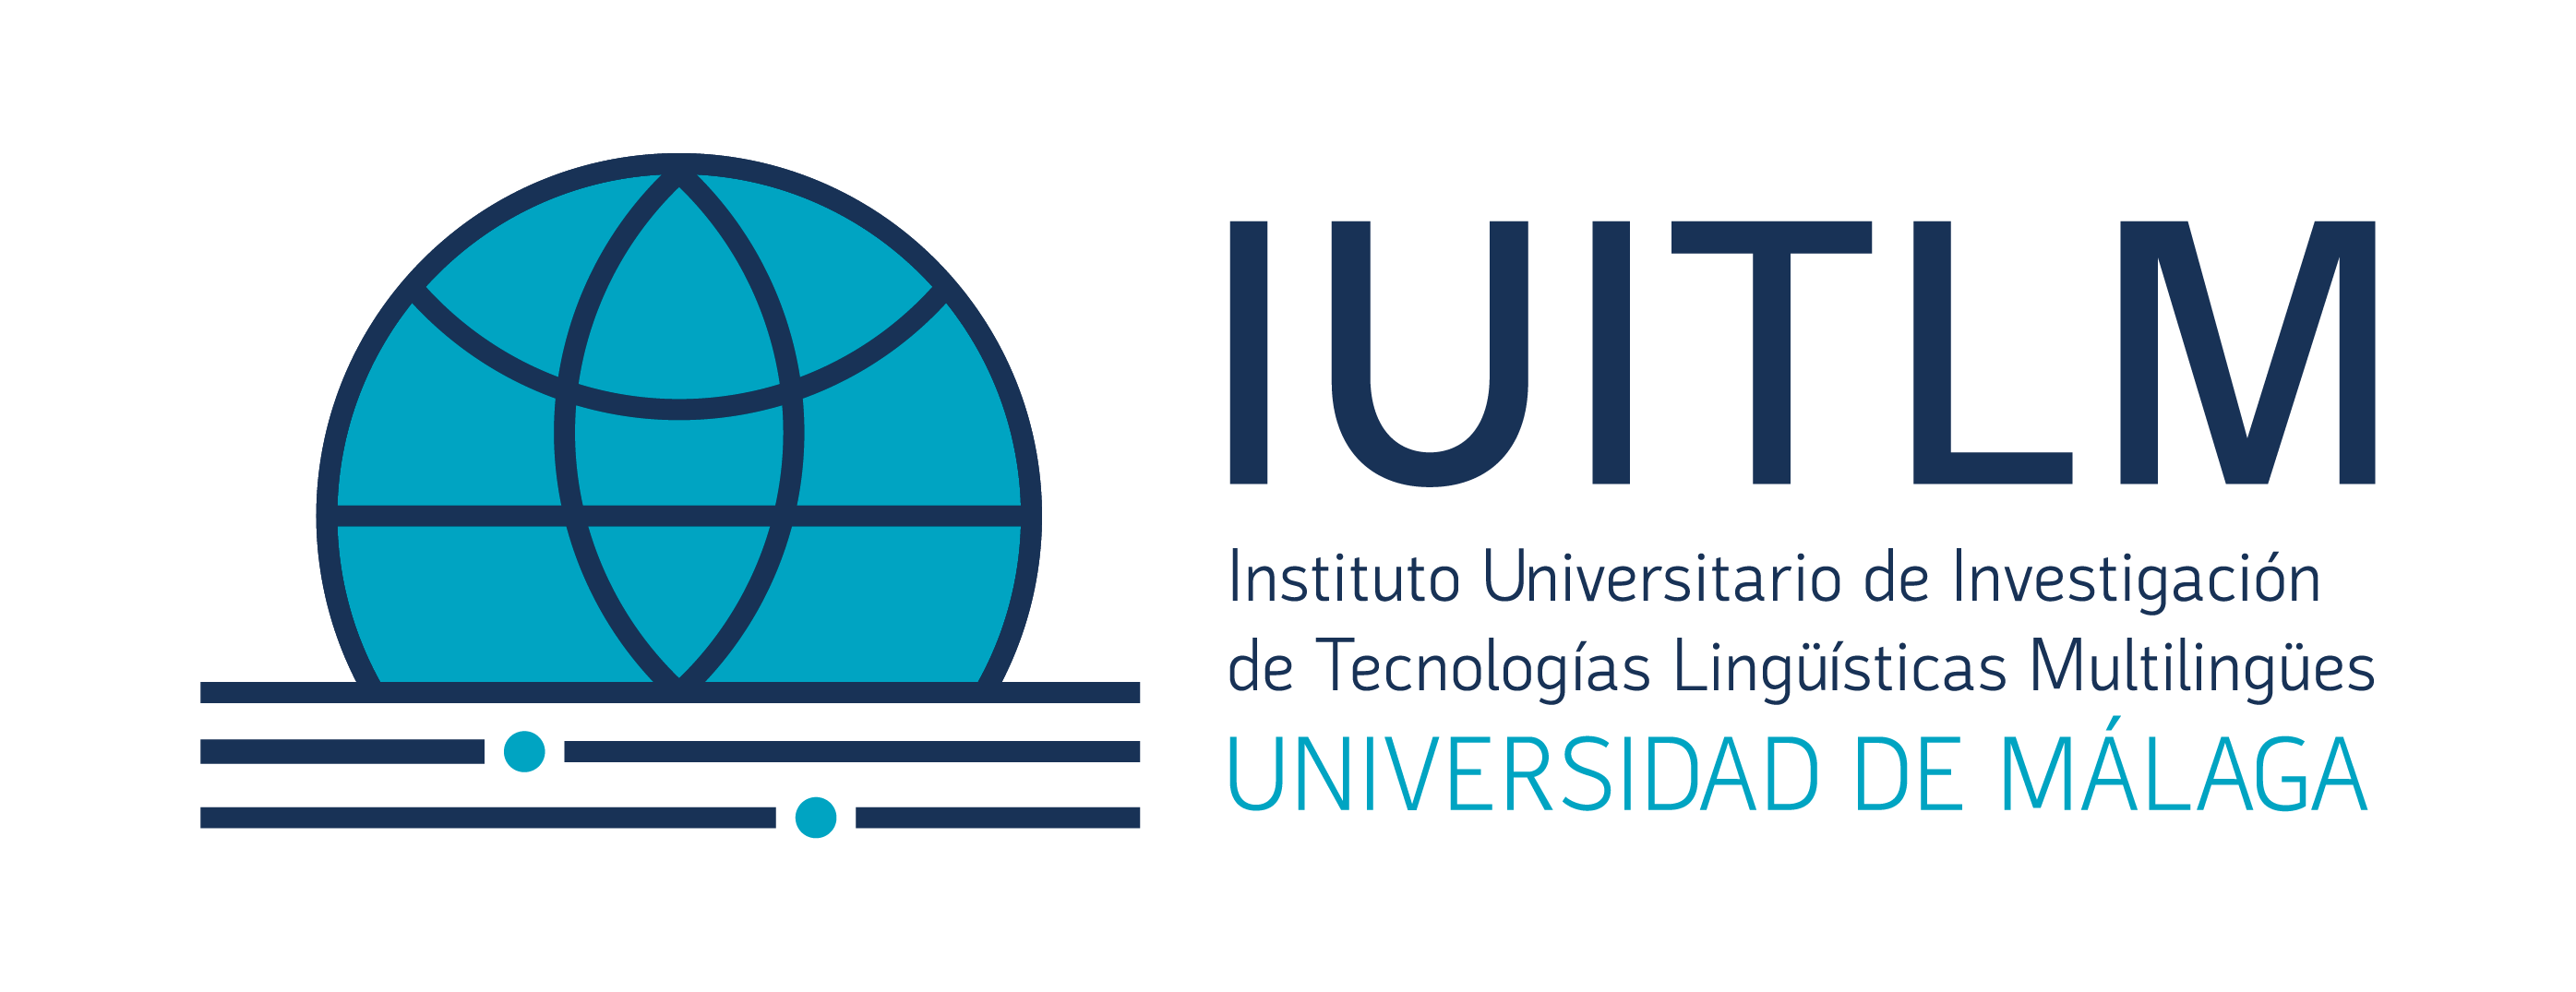 Instituto Universitario de Investigación de Tecnologías Lingüísticas Multilingües